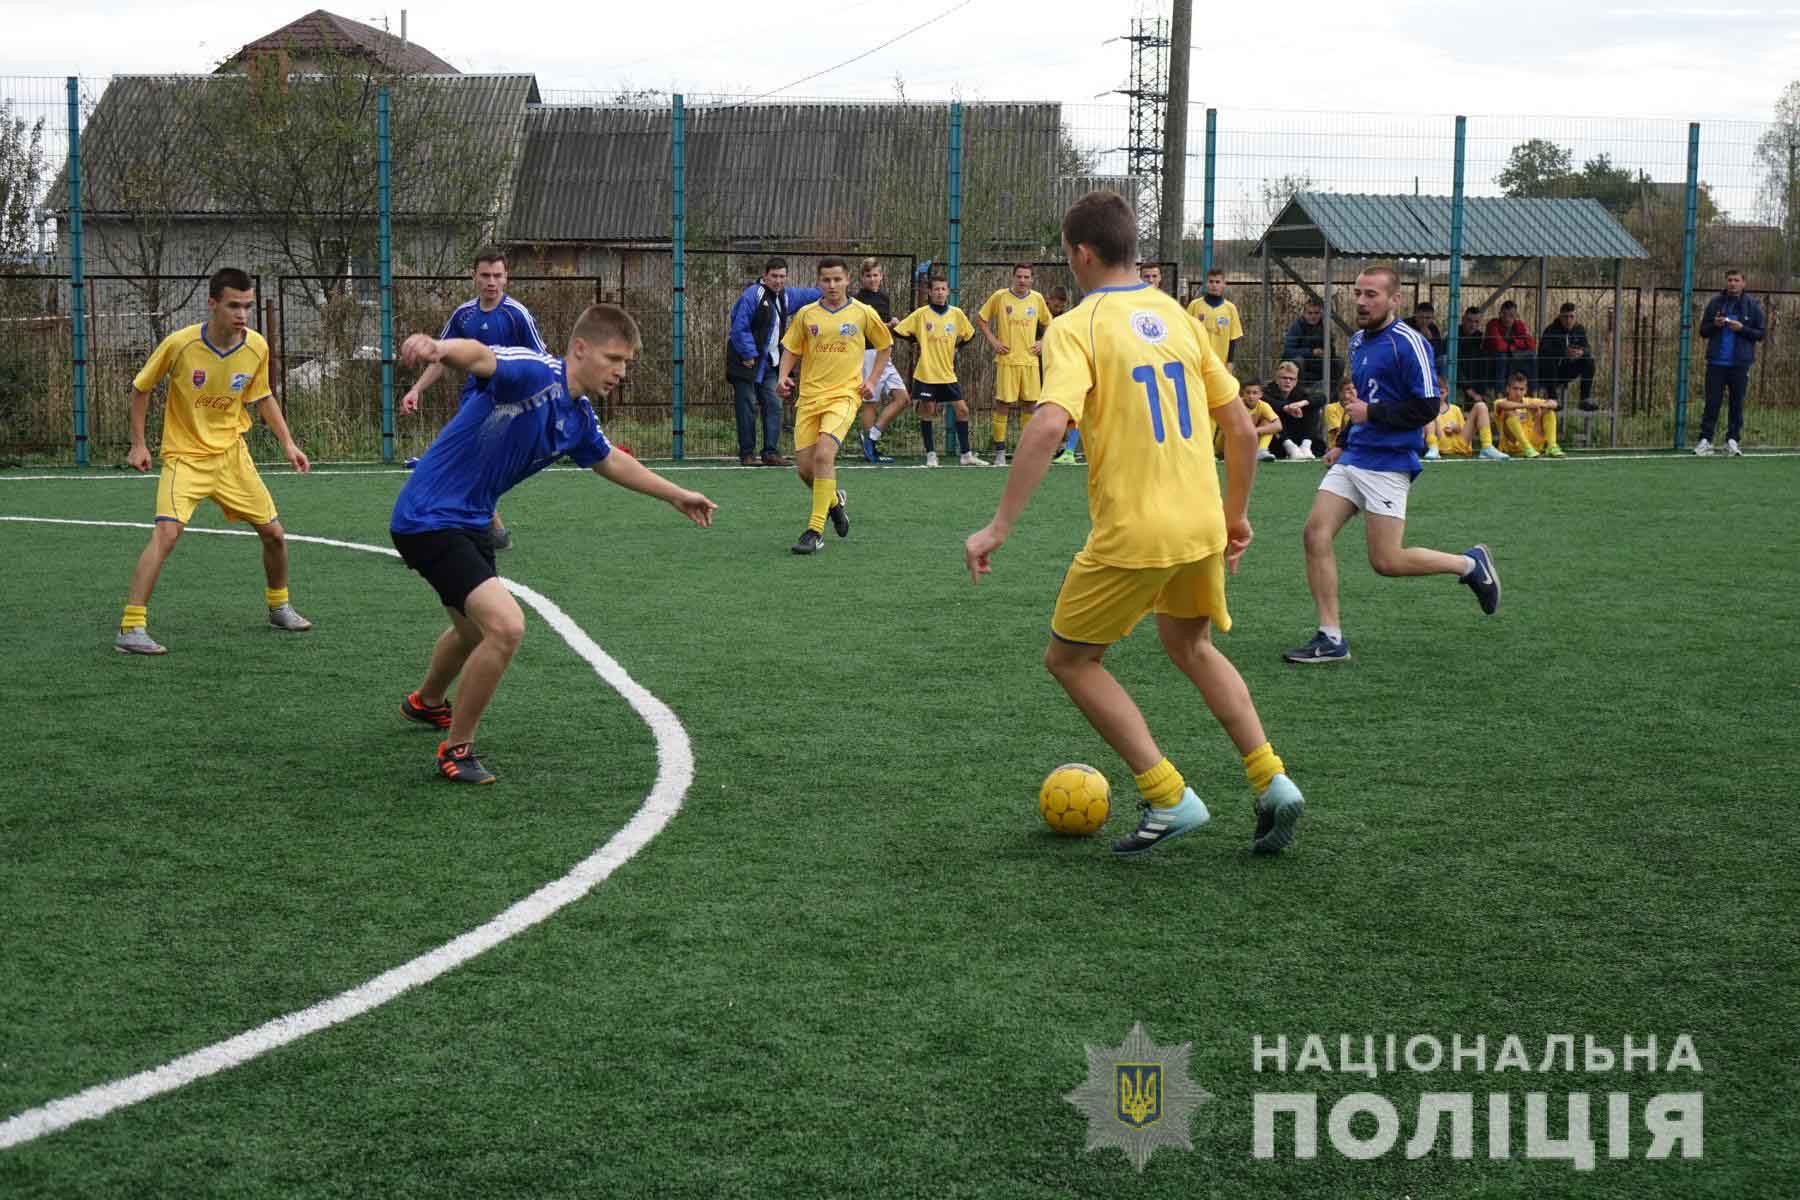 Пам’ять двох загиблих прикарпатських поліціянтів вшанували футбольним турніром (ФОТО)